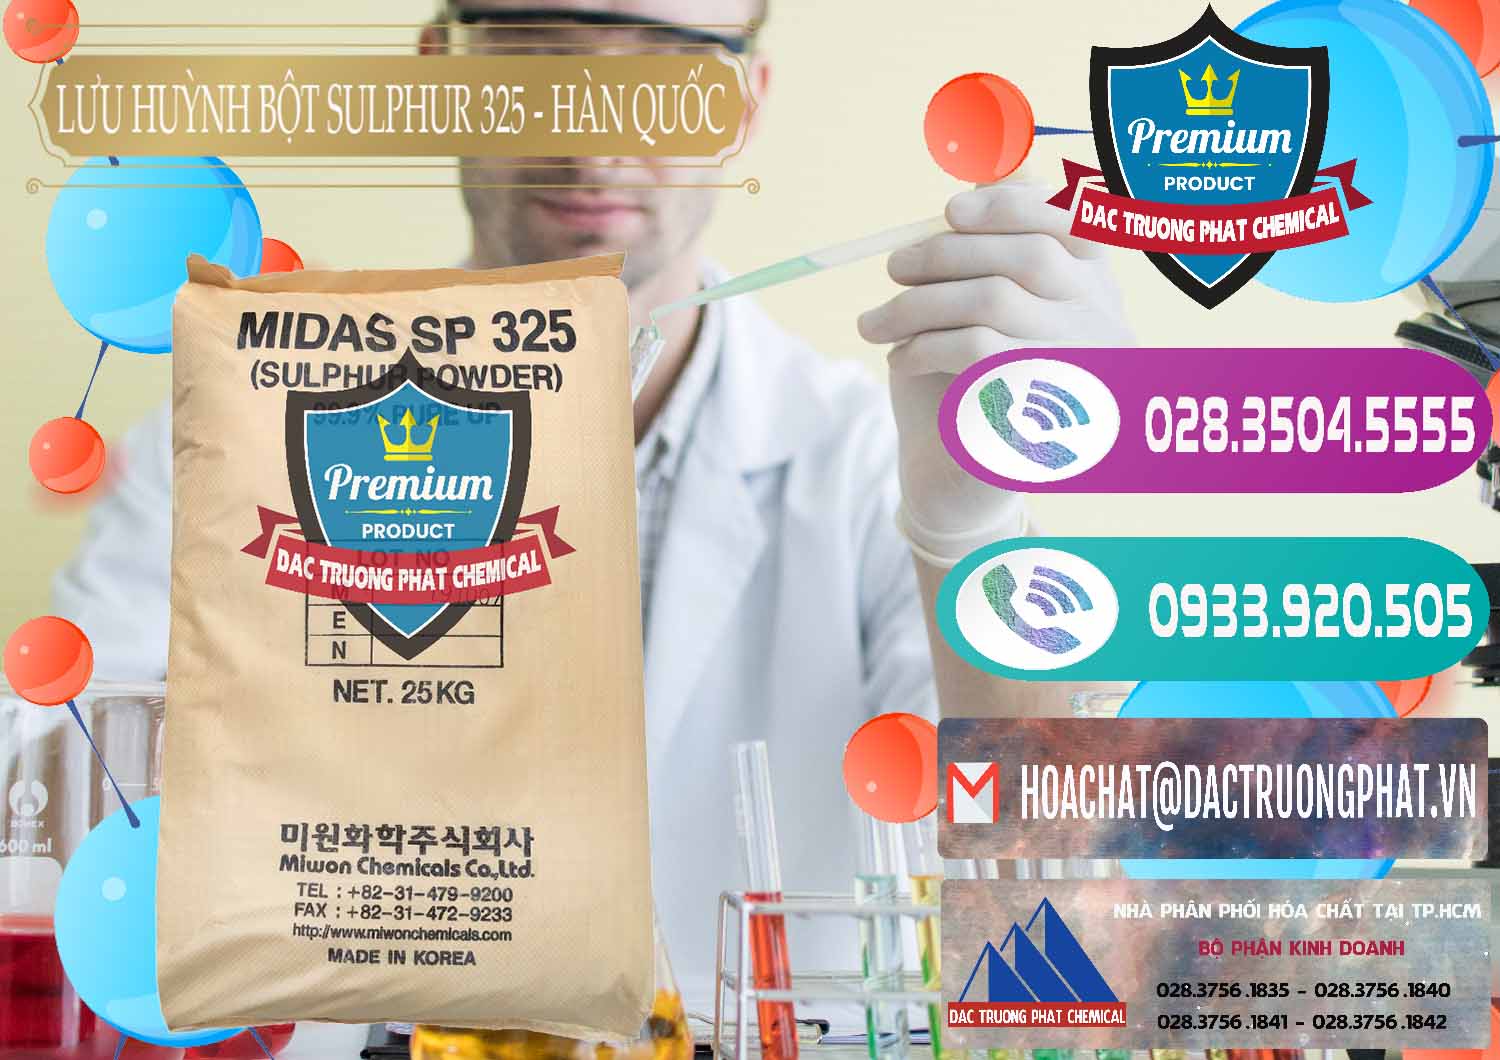 Cty bán - phân phối Lưu huỳnh Bột - Sulfur Powder Midas SP 325 Hàn Quốc Korea - 0198 - Công ty chuyên nhập khẩu & phân phối hóa chất tại TP.HCM - hoachatxulynuoc.com